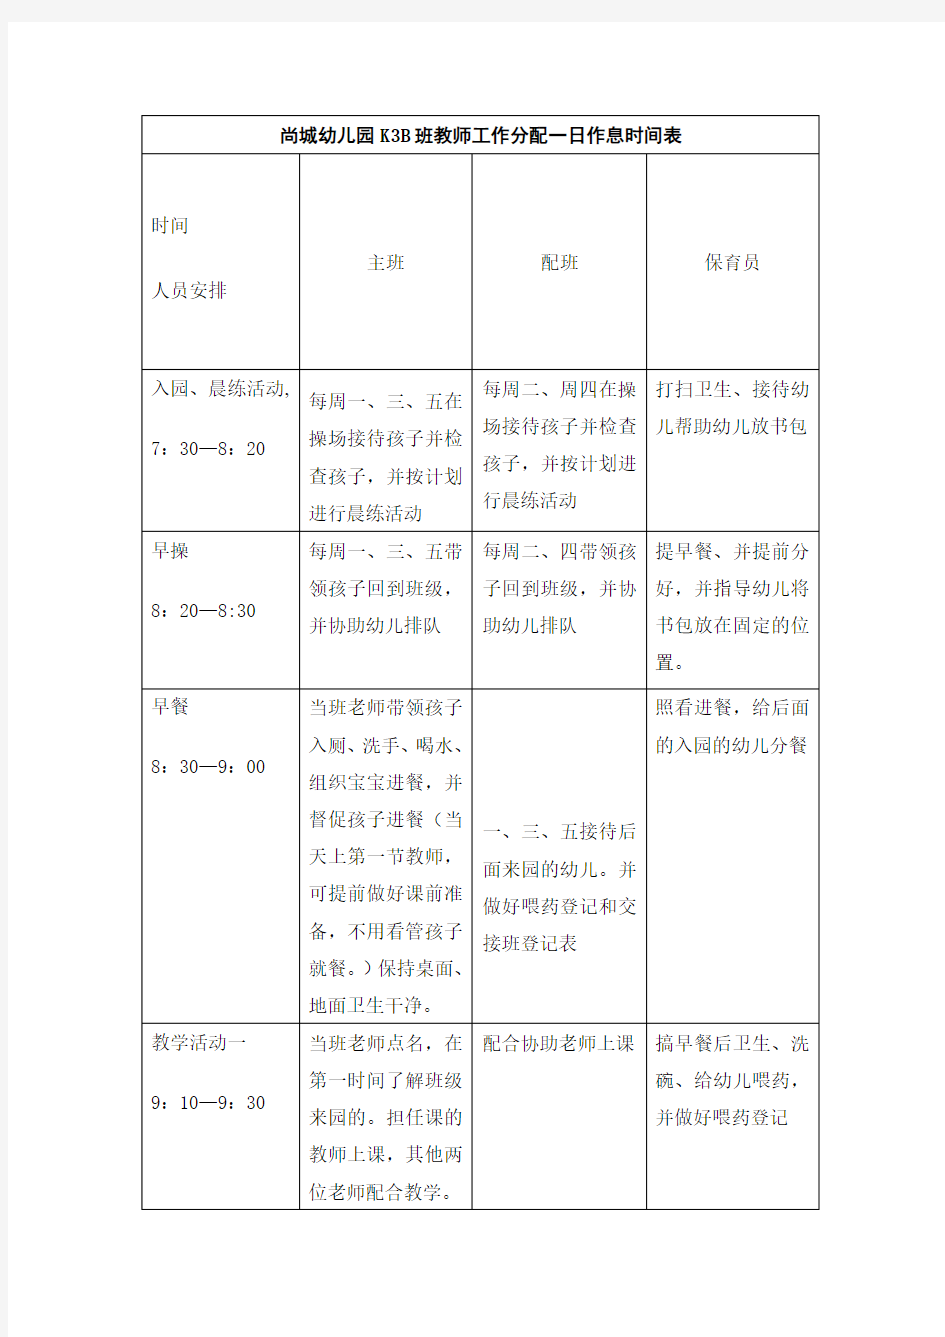 尚城幼儿园K3B班教师工作分配一日作息时间表